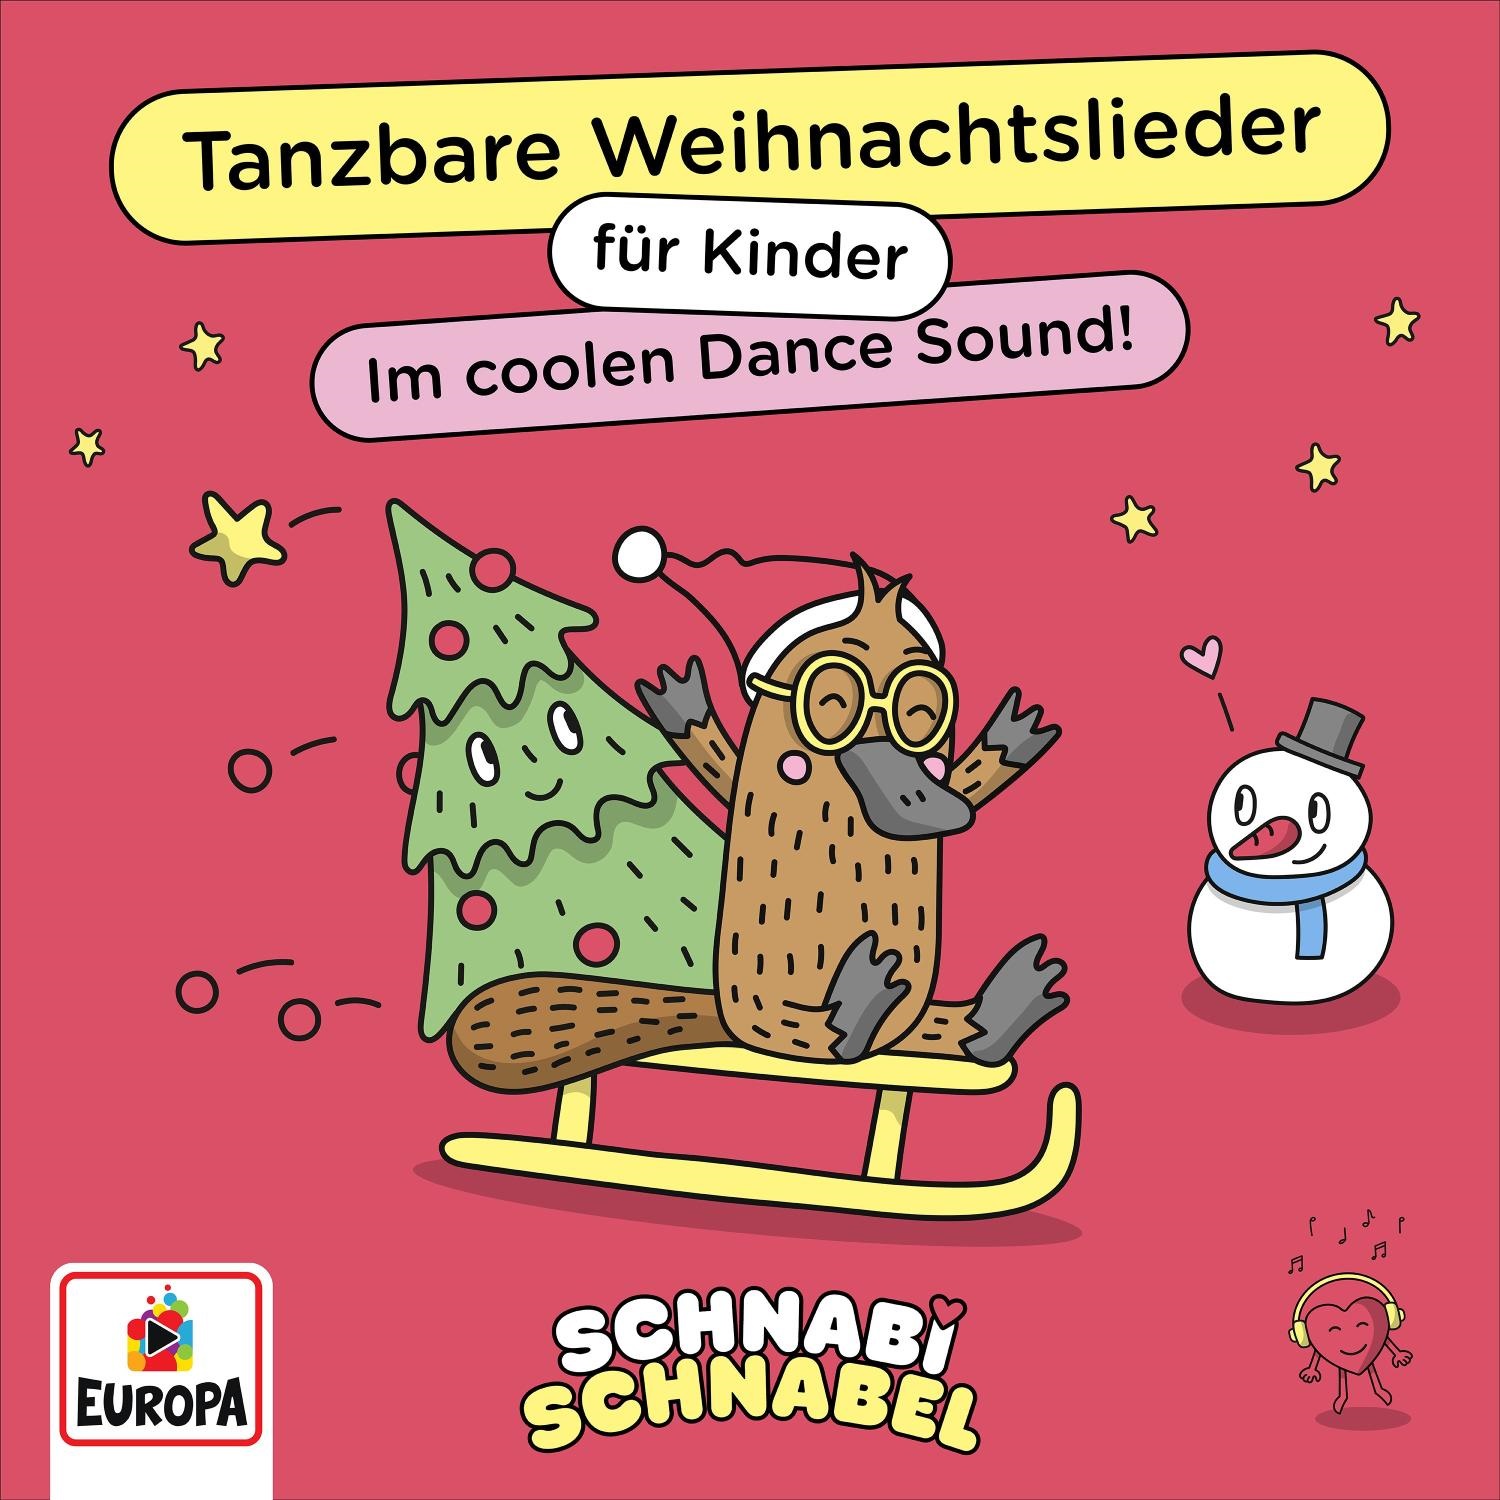 Schnabi Schnabel: Tanzbare Weihnachtslieder für Kinder!